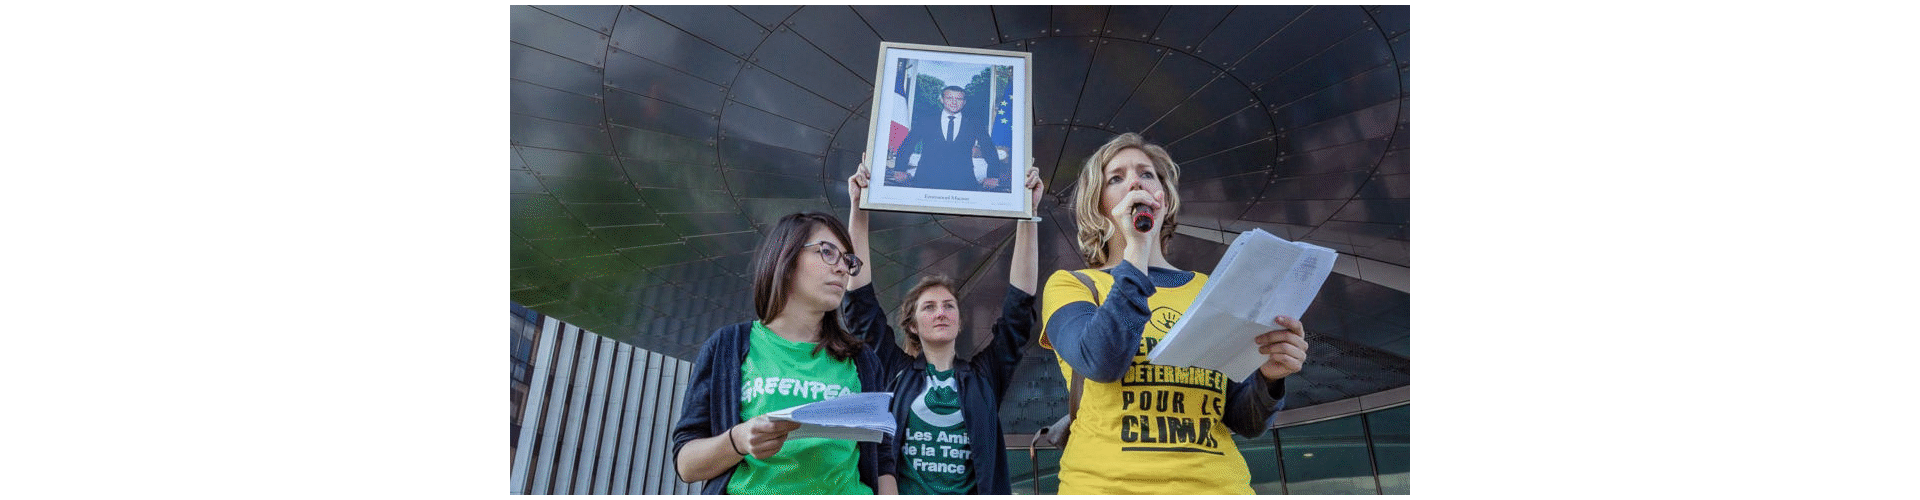 Sortie d’un portrait de Macron réquisitionné lors de l’action Bloquons la République des pollueurs le 19 avril 2019 – photo Julien Helaine﻿